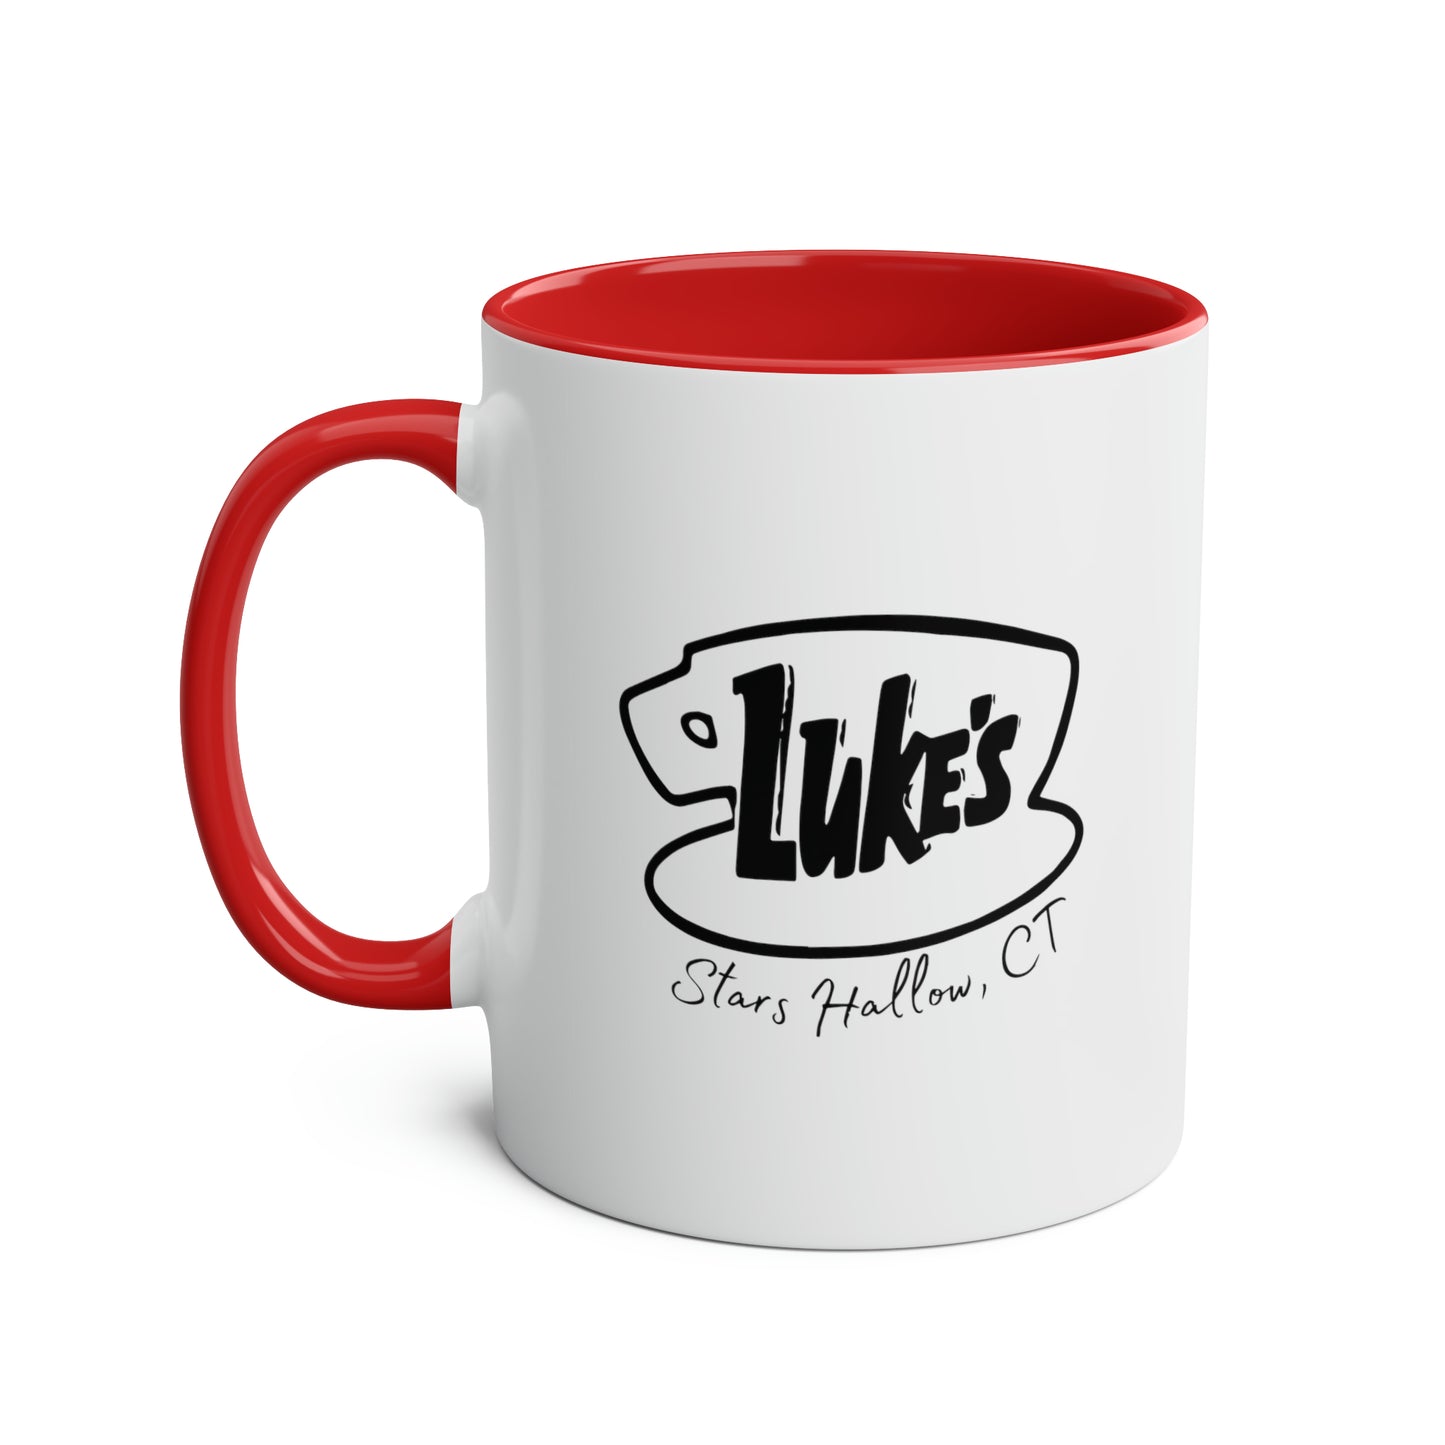 Luke's Diner / Gilmore Girls Mug